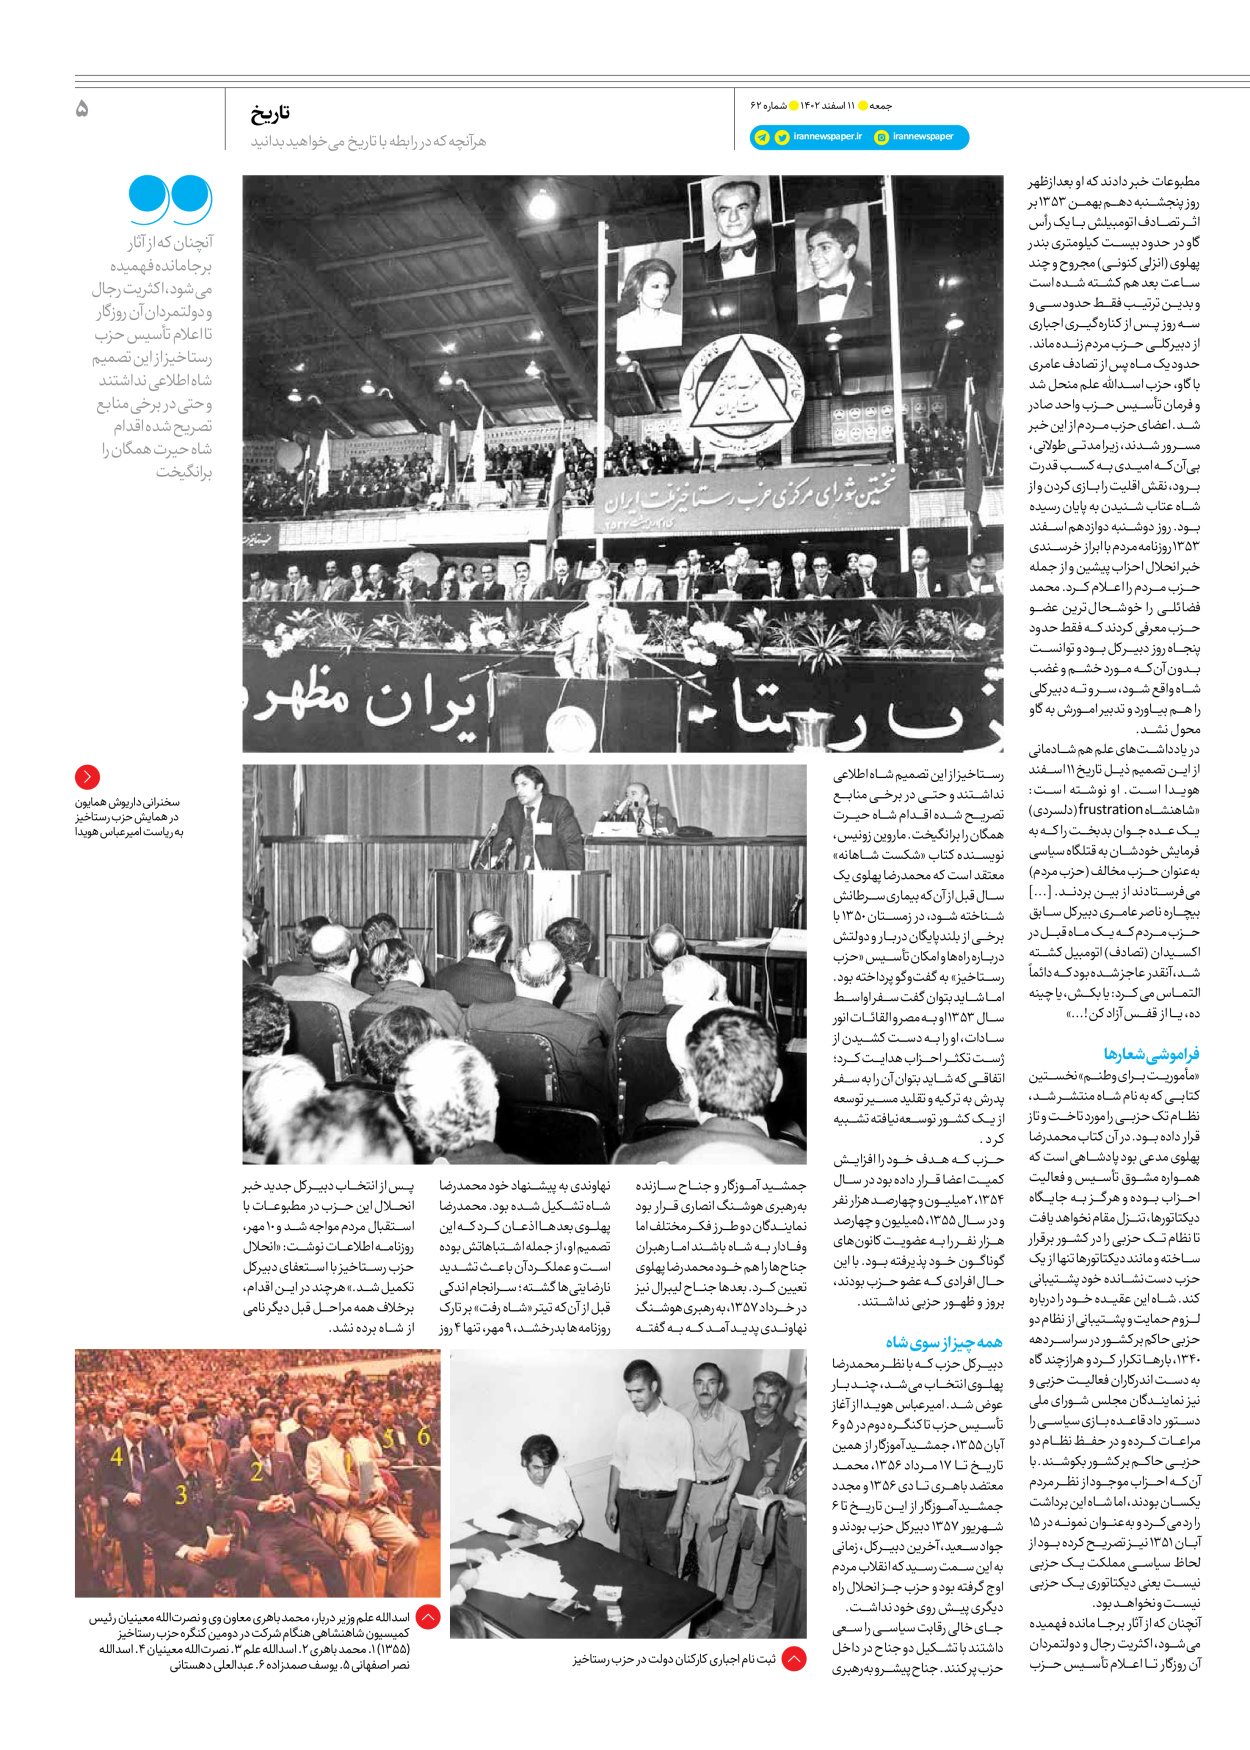 روزنامه ایران - ویژه نامه جمعه ۶۲ - ۱۰ اسفند ۱۴۰۲ - صفحه ۵